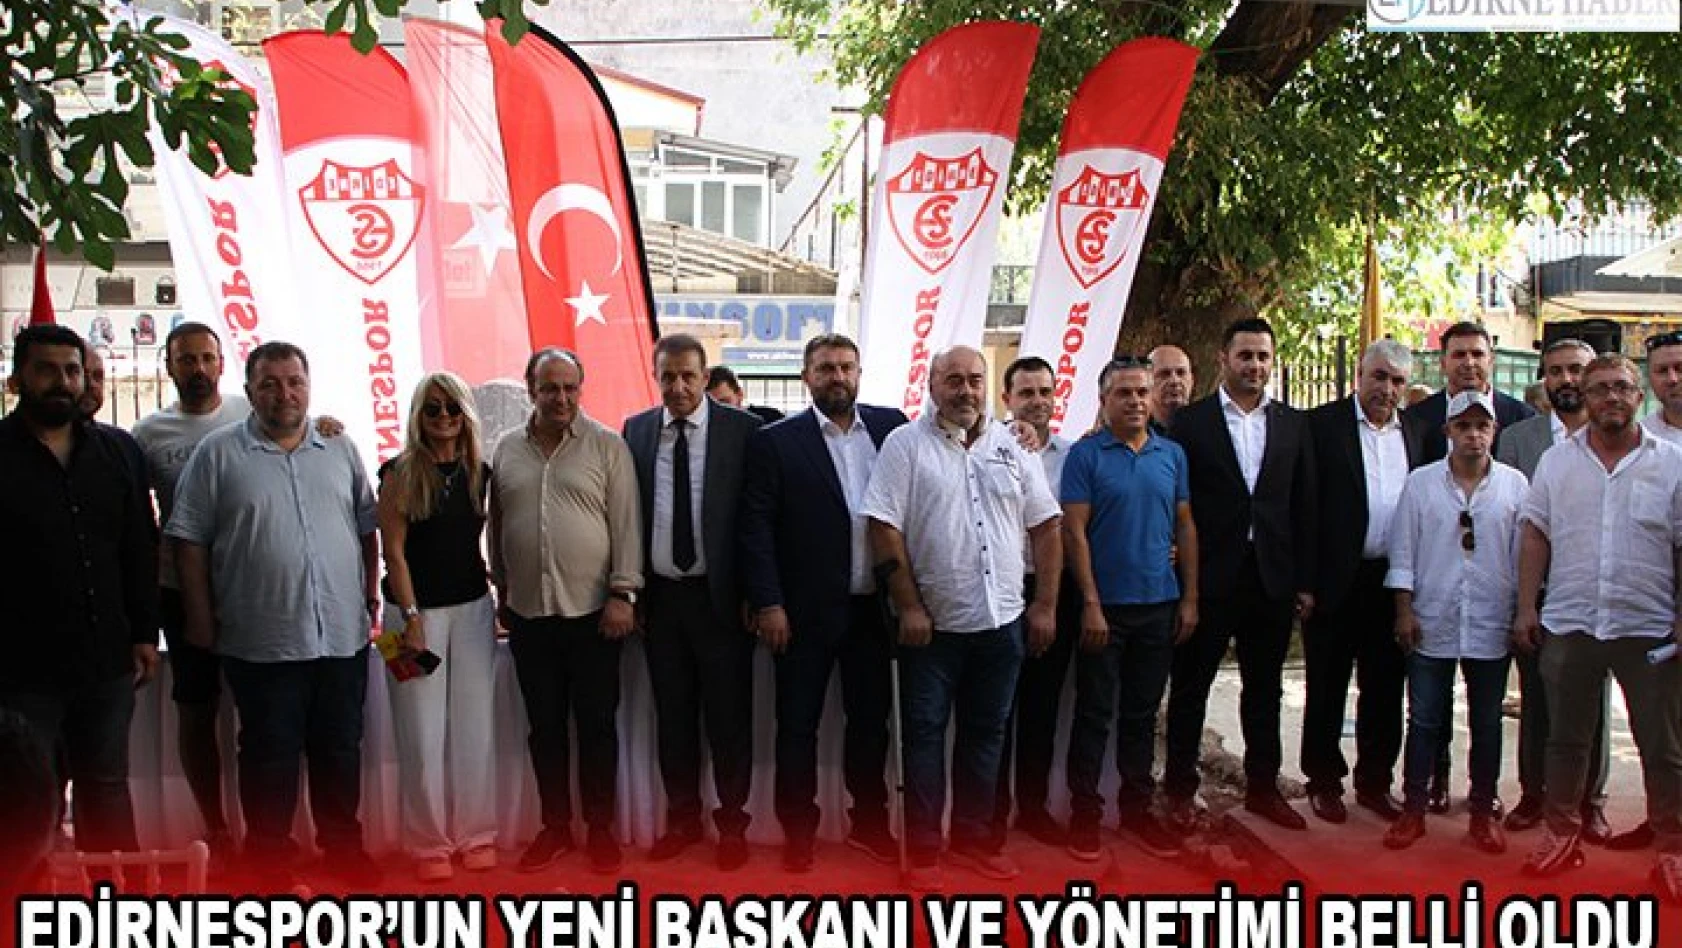 Edirnespor'un yeni başkanı ve yönetimi belli oldu